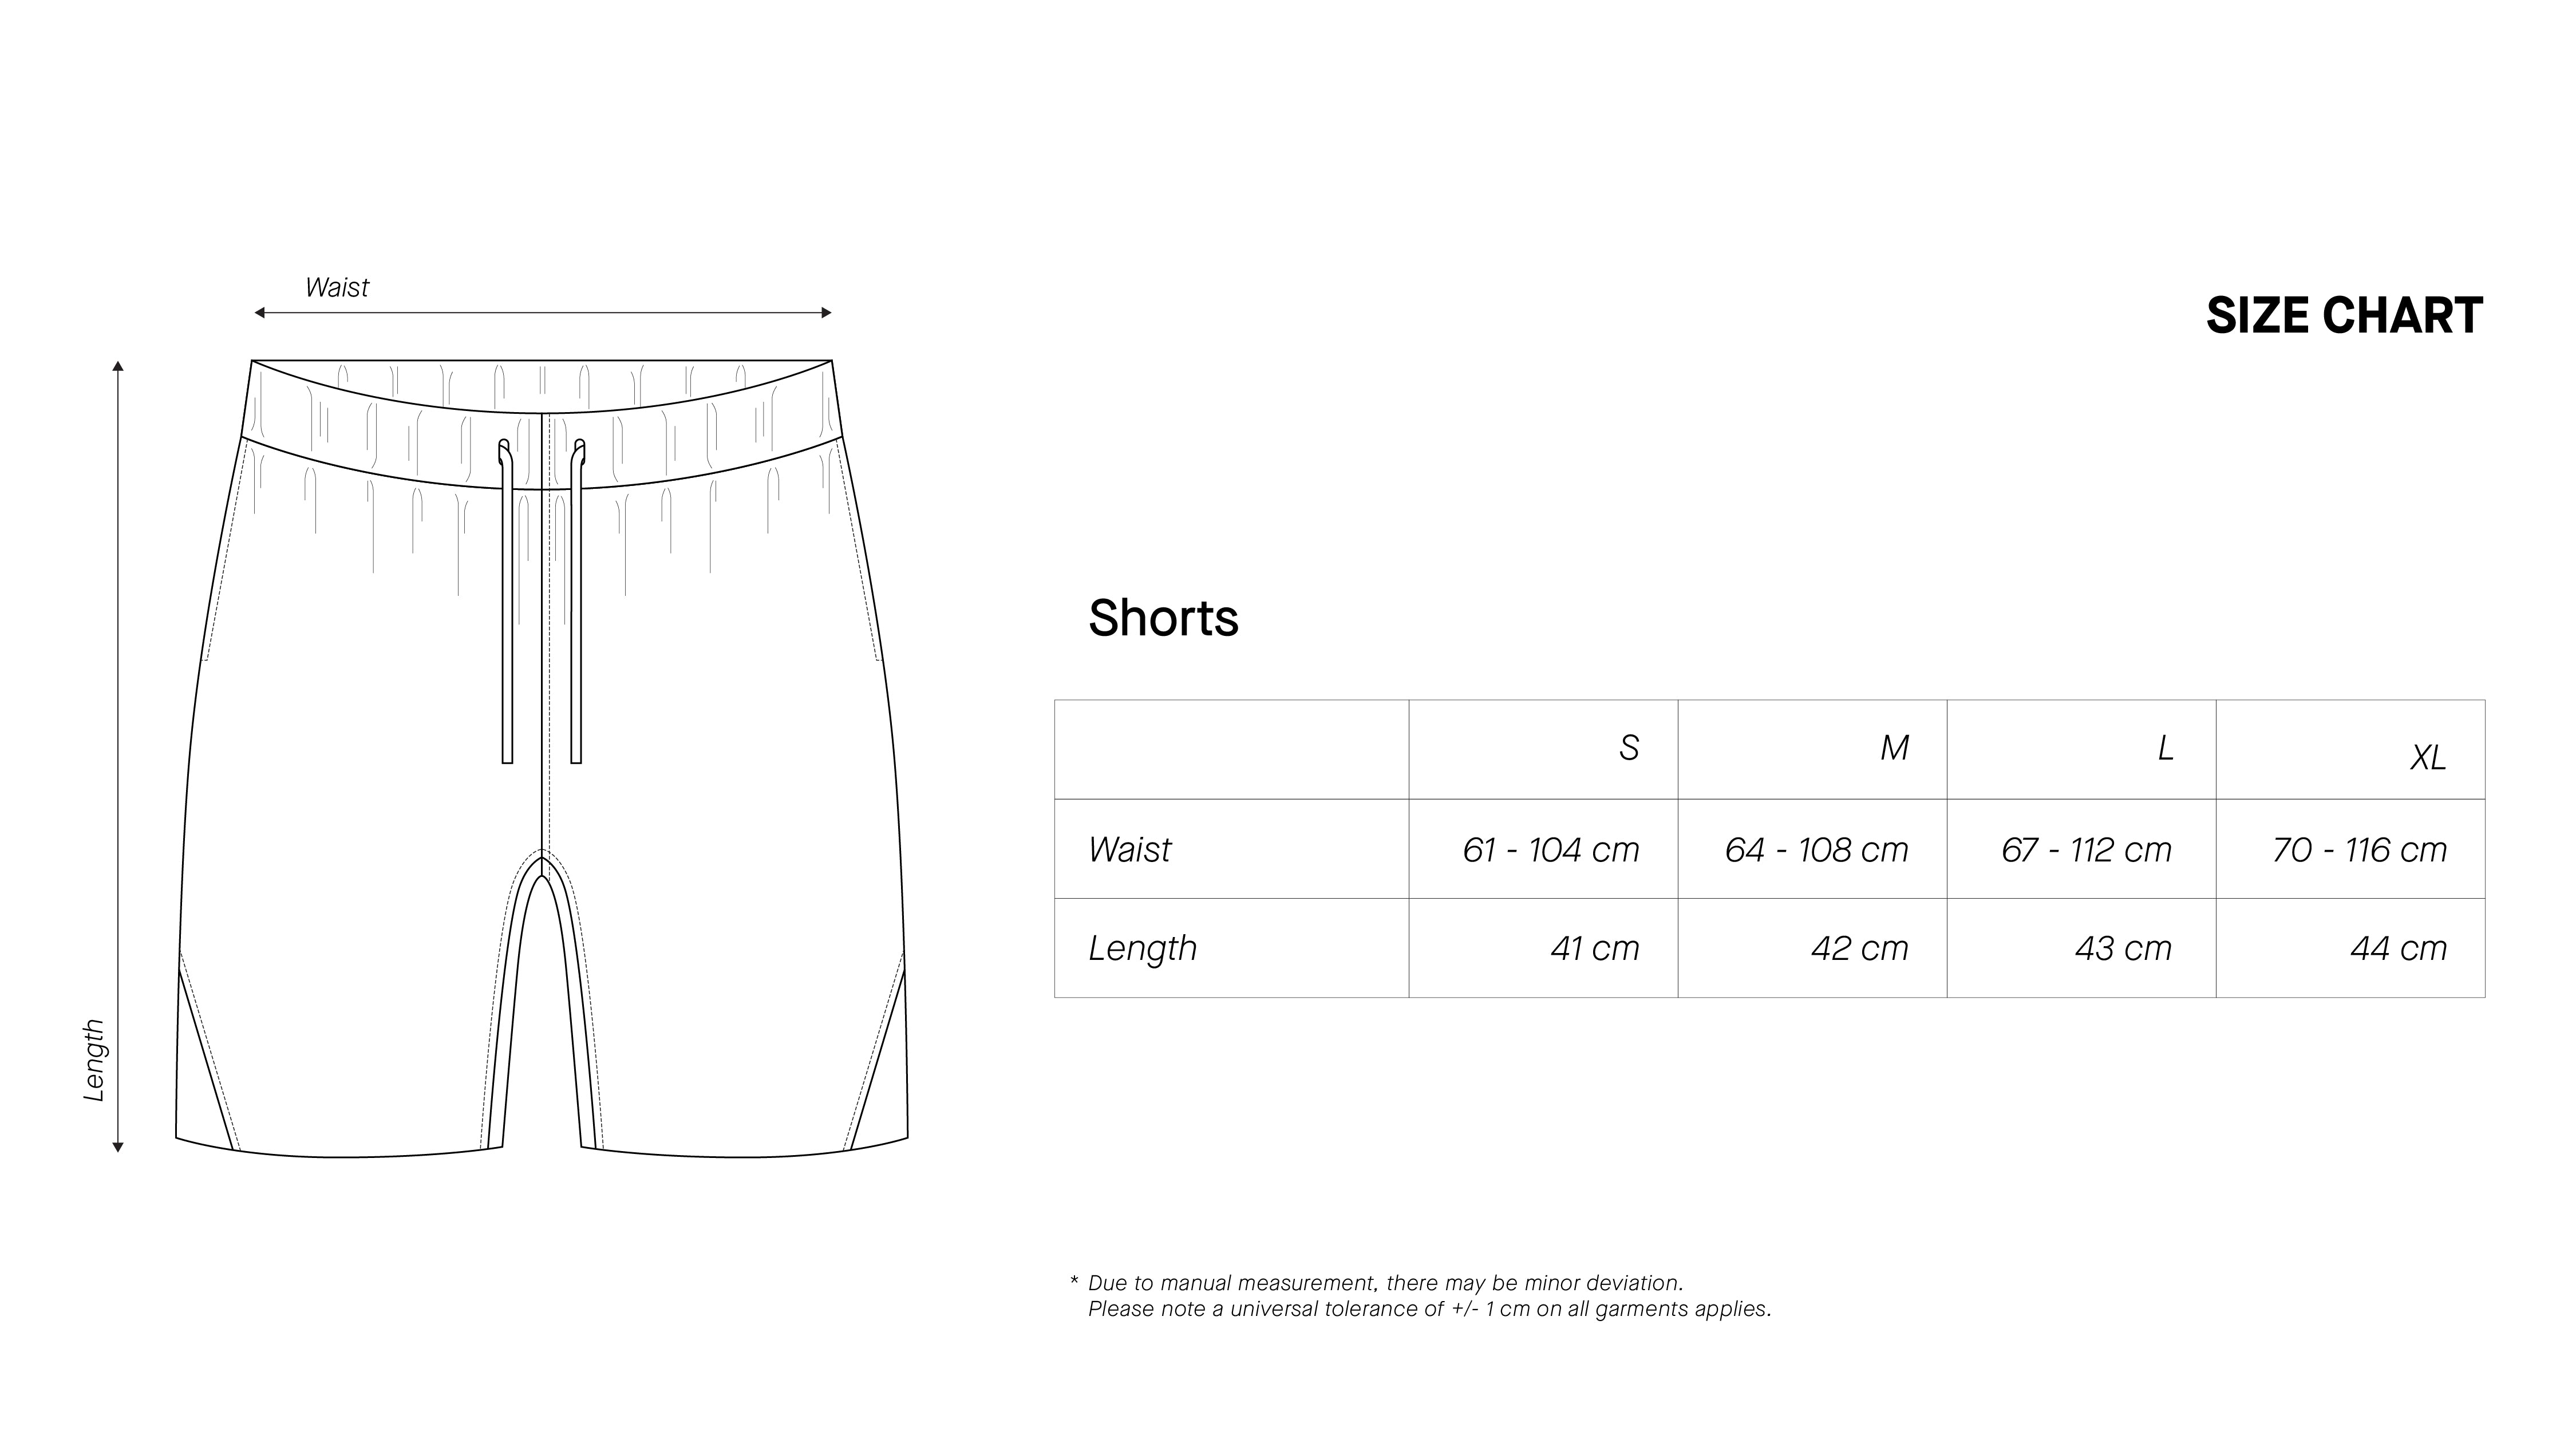 Shorts - Marrow